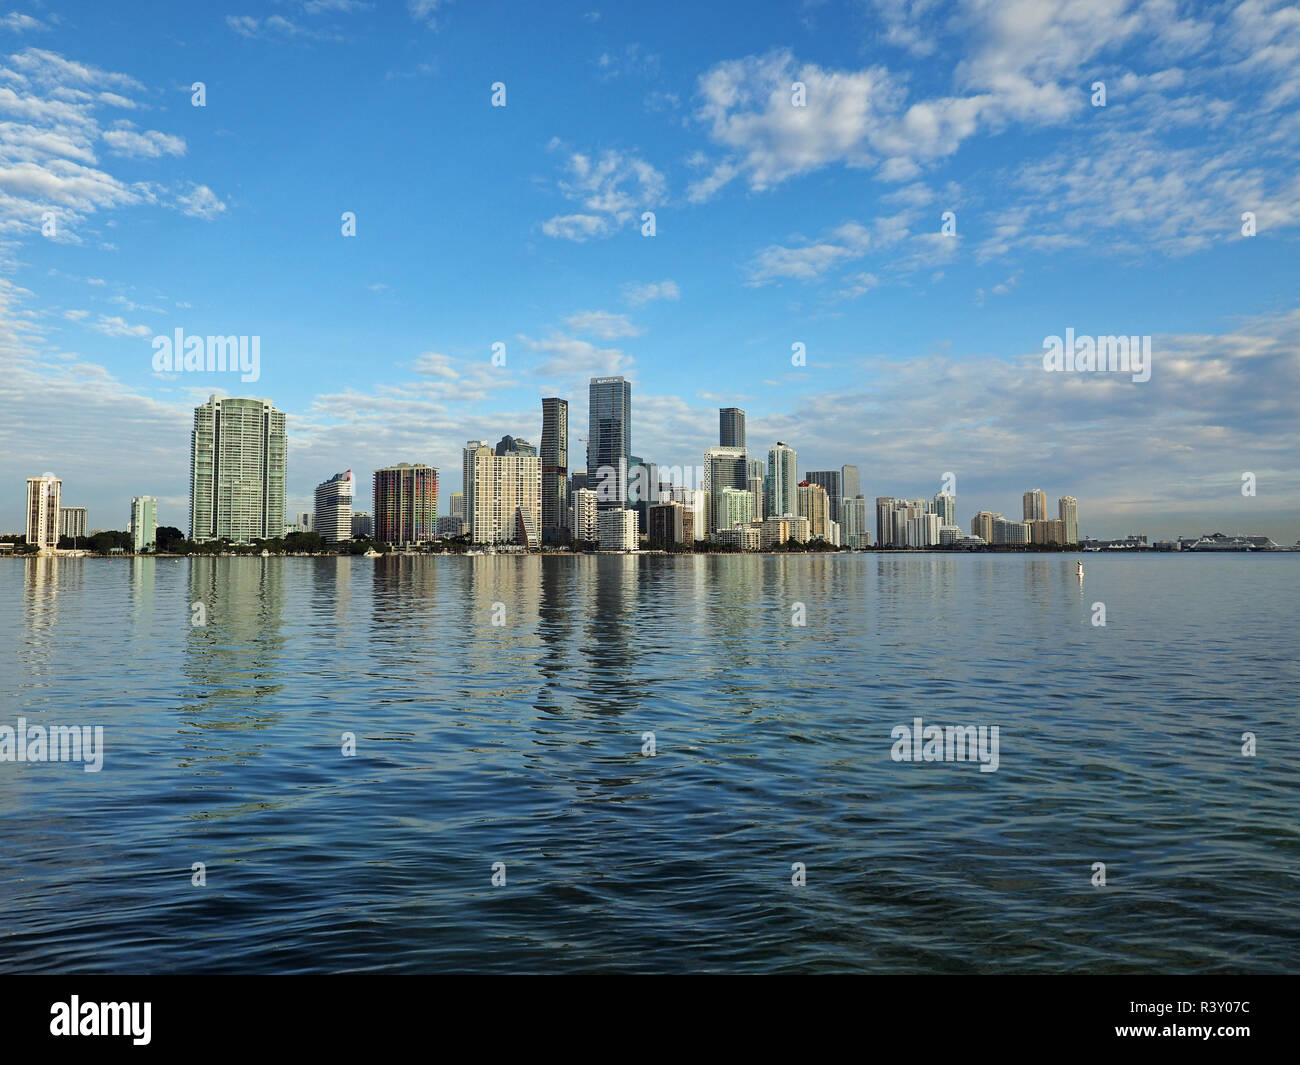 Miami, Florida 11-24-2018 Die Skyline der Stadt von Miami, Florida, im ruhigen Wasser der Biscayne Bay am frühen Morgen Licht reflektiert. Stockfoto